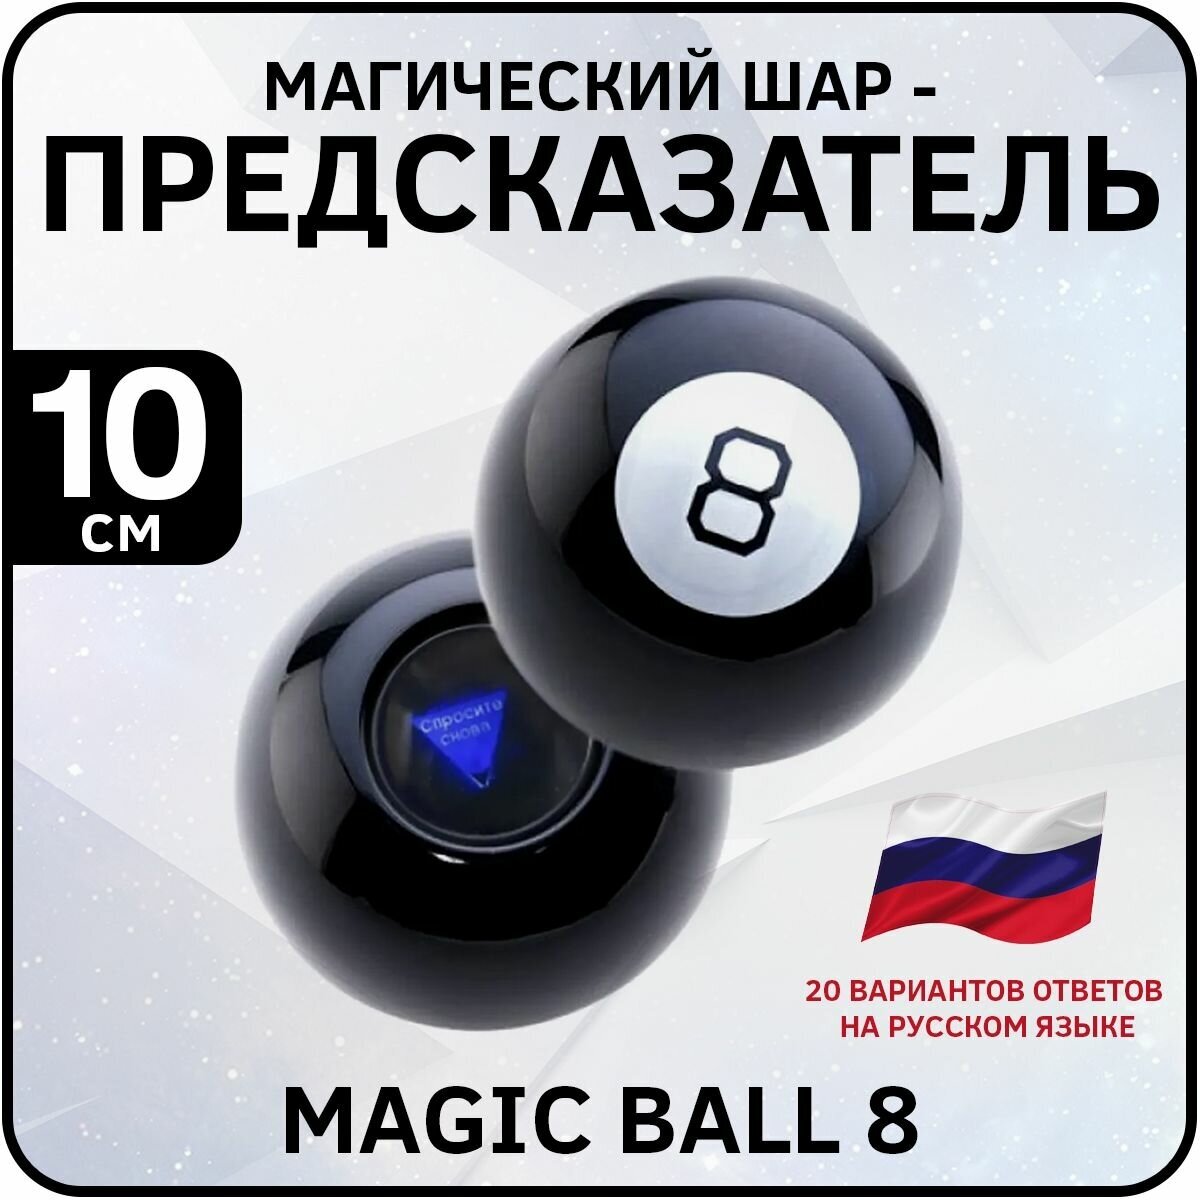 Шар предсказатель 8 на русском языке Magic ball 8 (Диаметр 10 см)